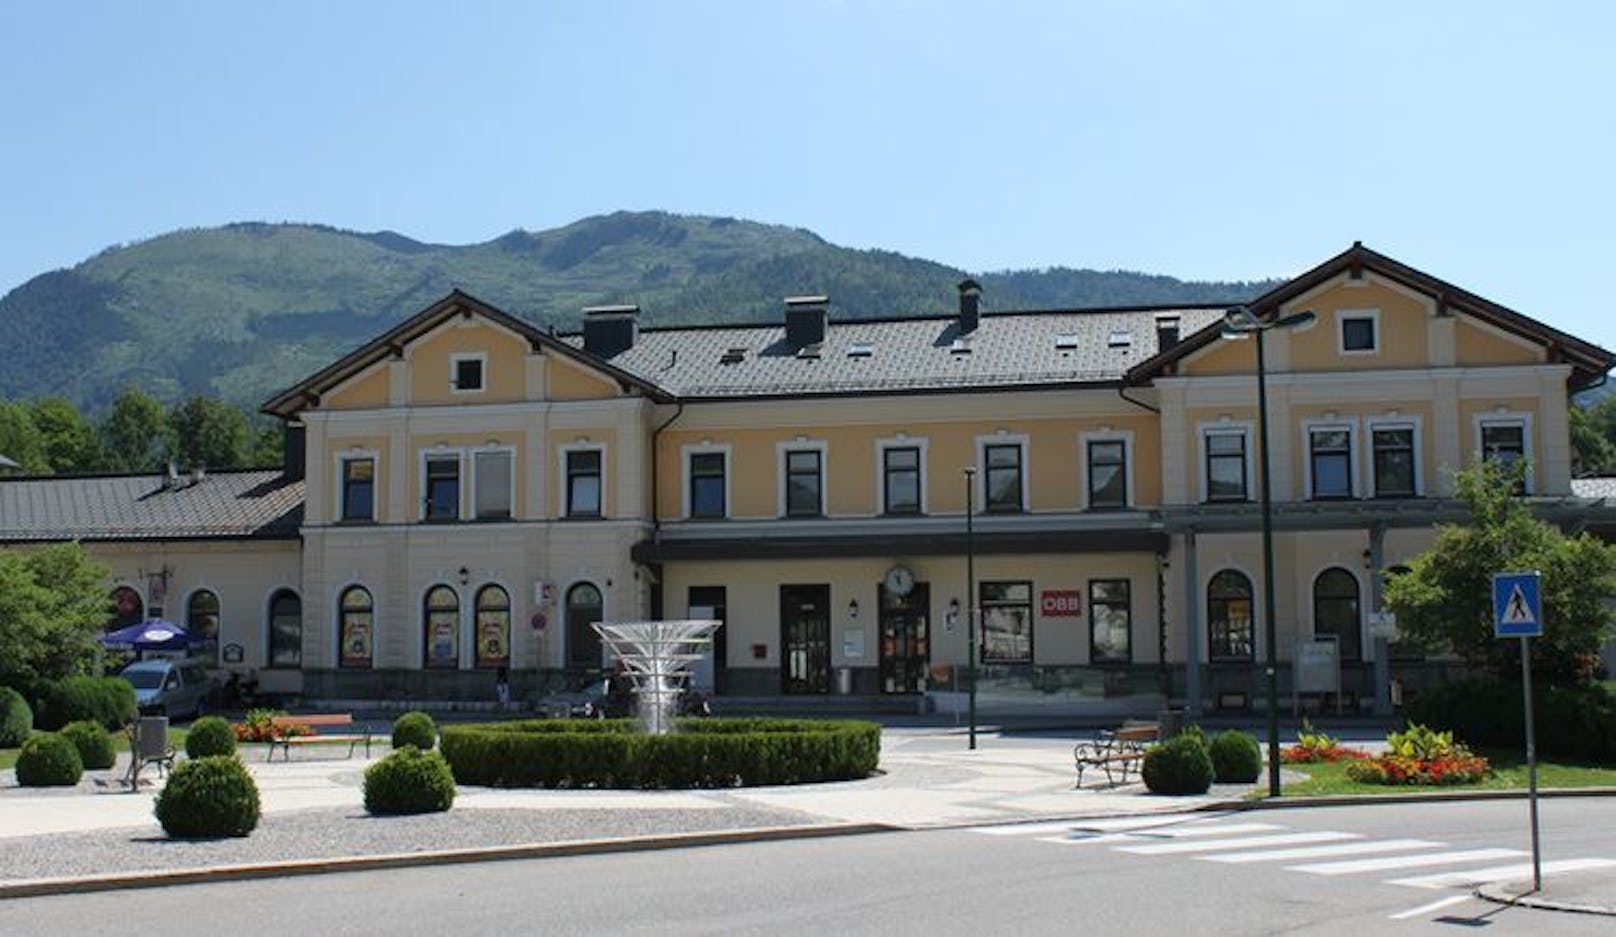 Der Vorfall passierte am Bahnhof in Bad Ischl.